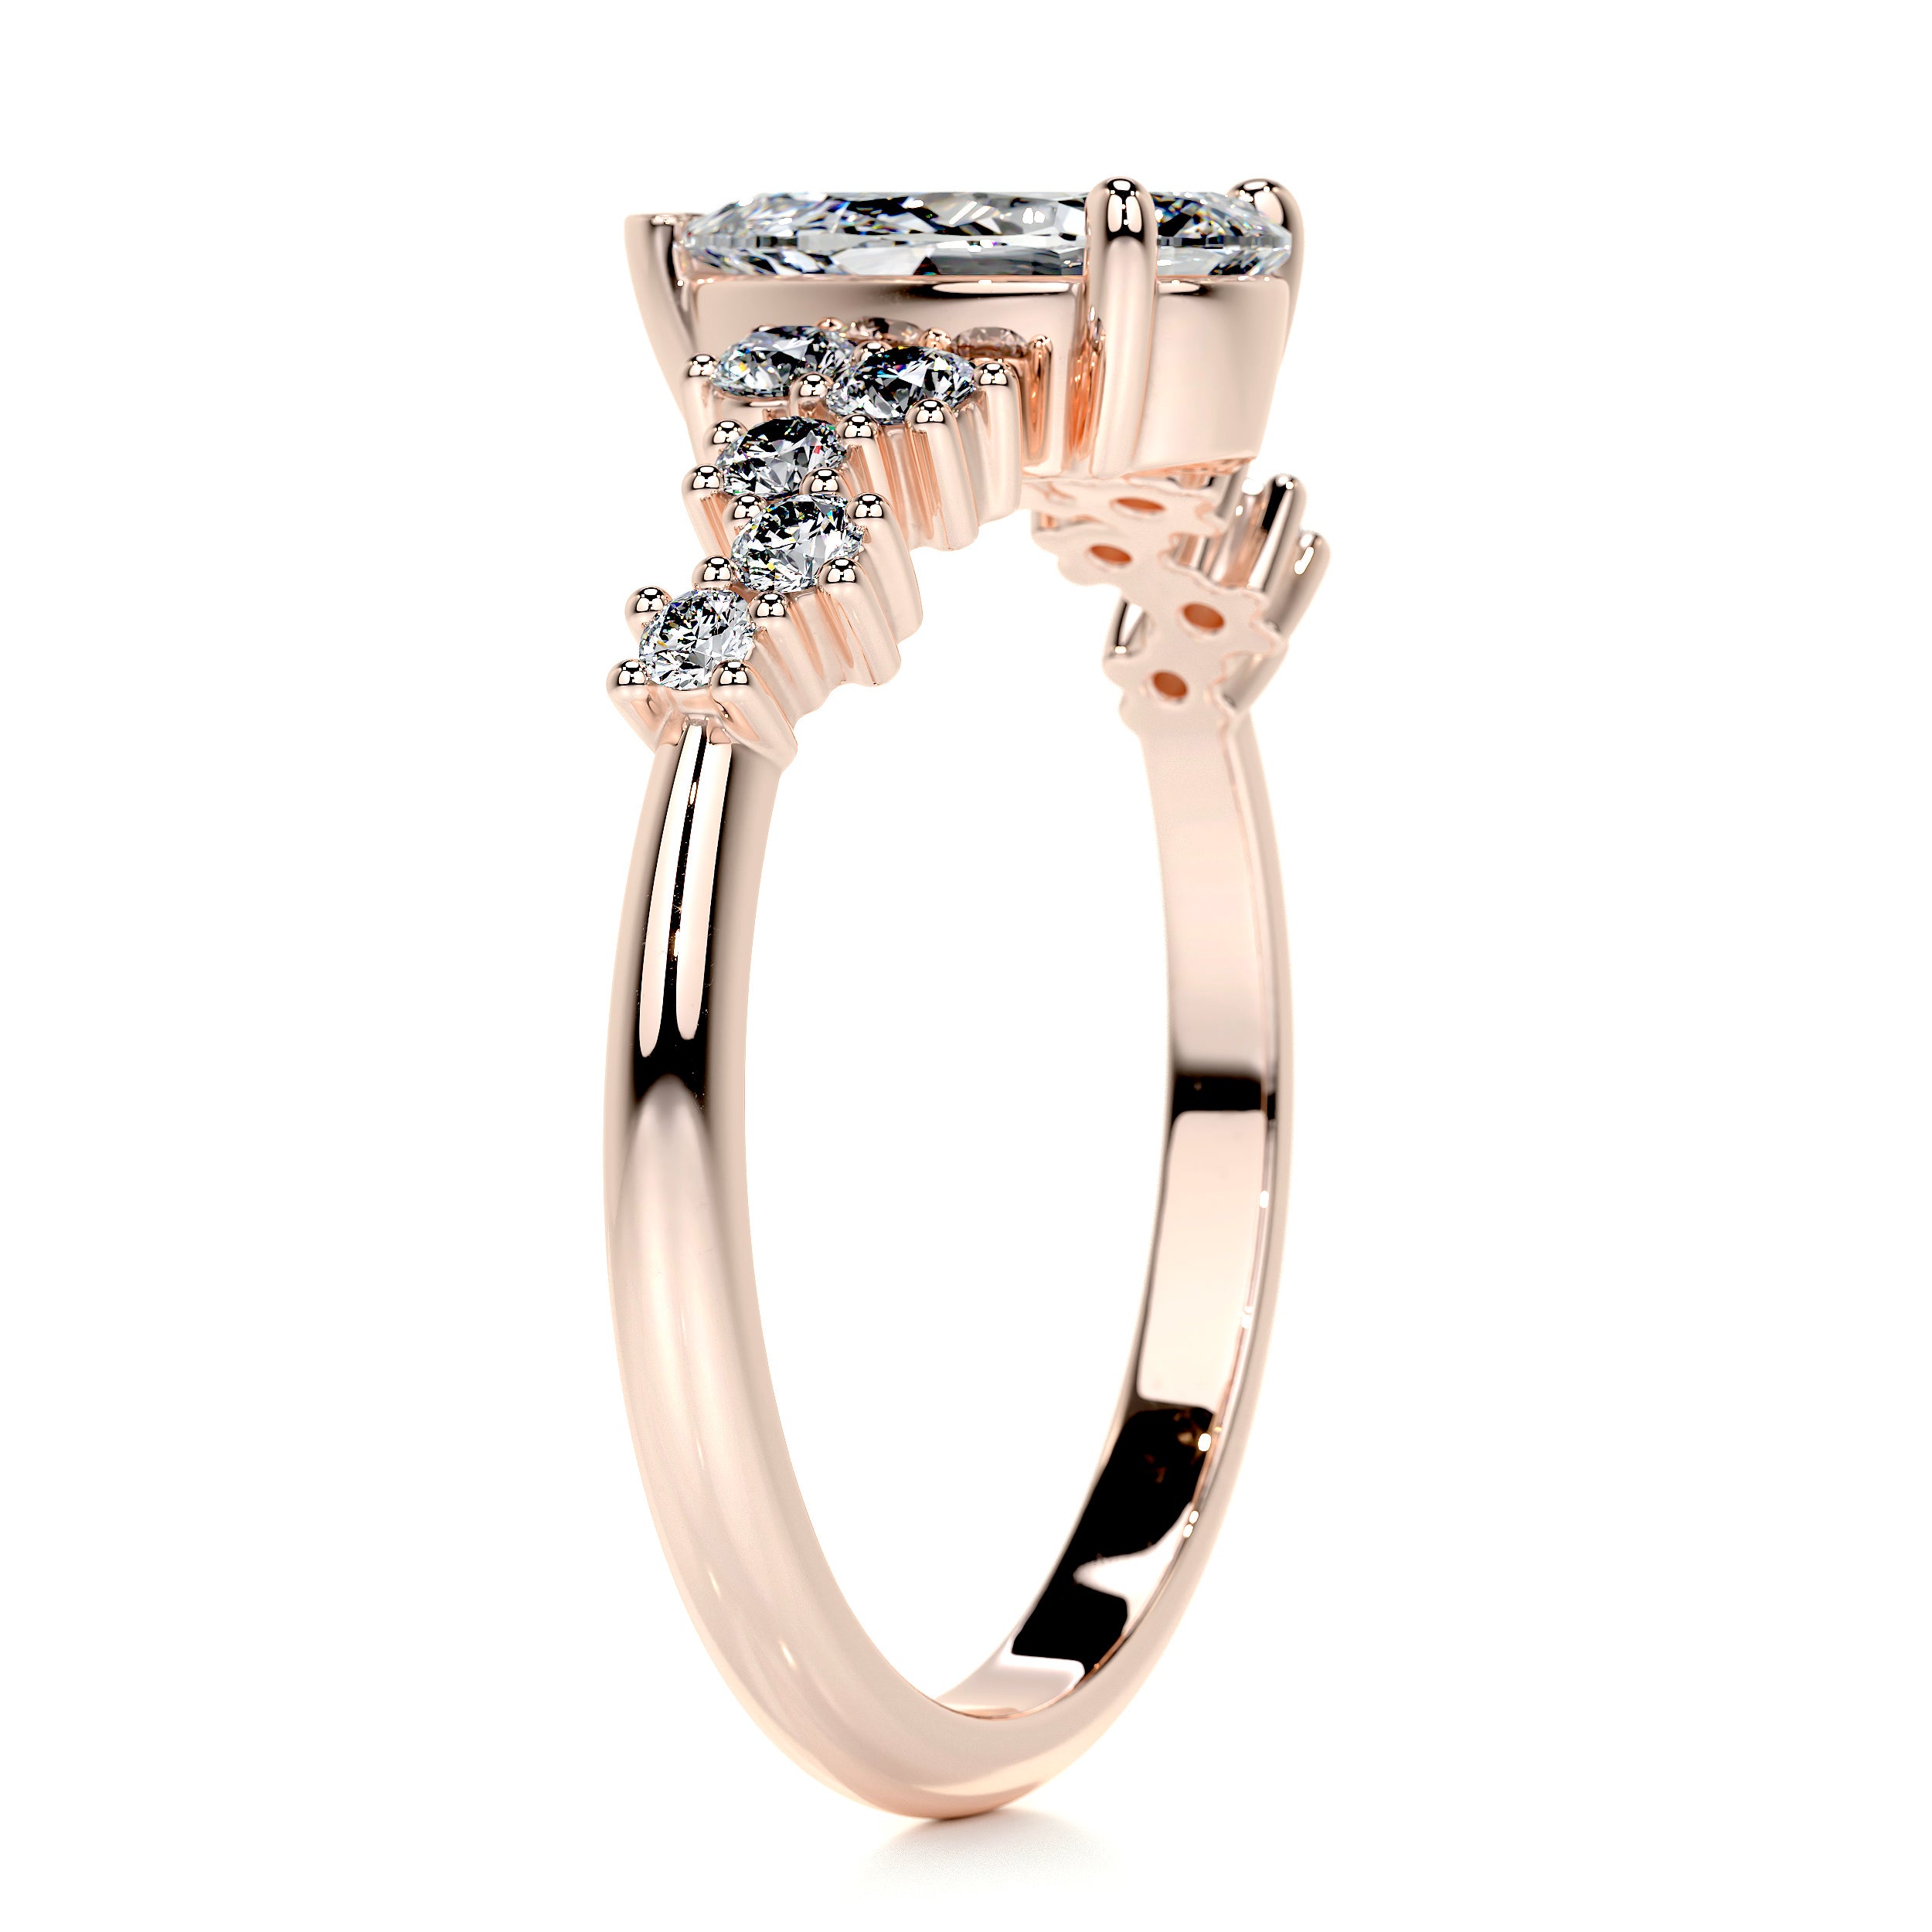 Mabel Diamond Engagement Ring   (1.25 Carat) -14K Rose Gold